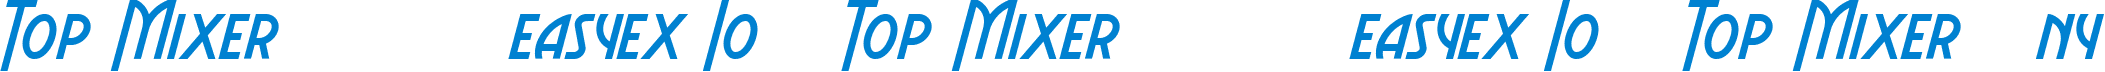 Top Mixer混币器 ️复制访问easyex Io ️ Top Mixer混币器 ️复制访问easyex Io ️ Top Mixer混币器ny